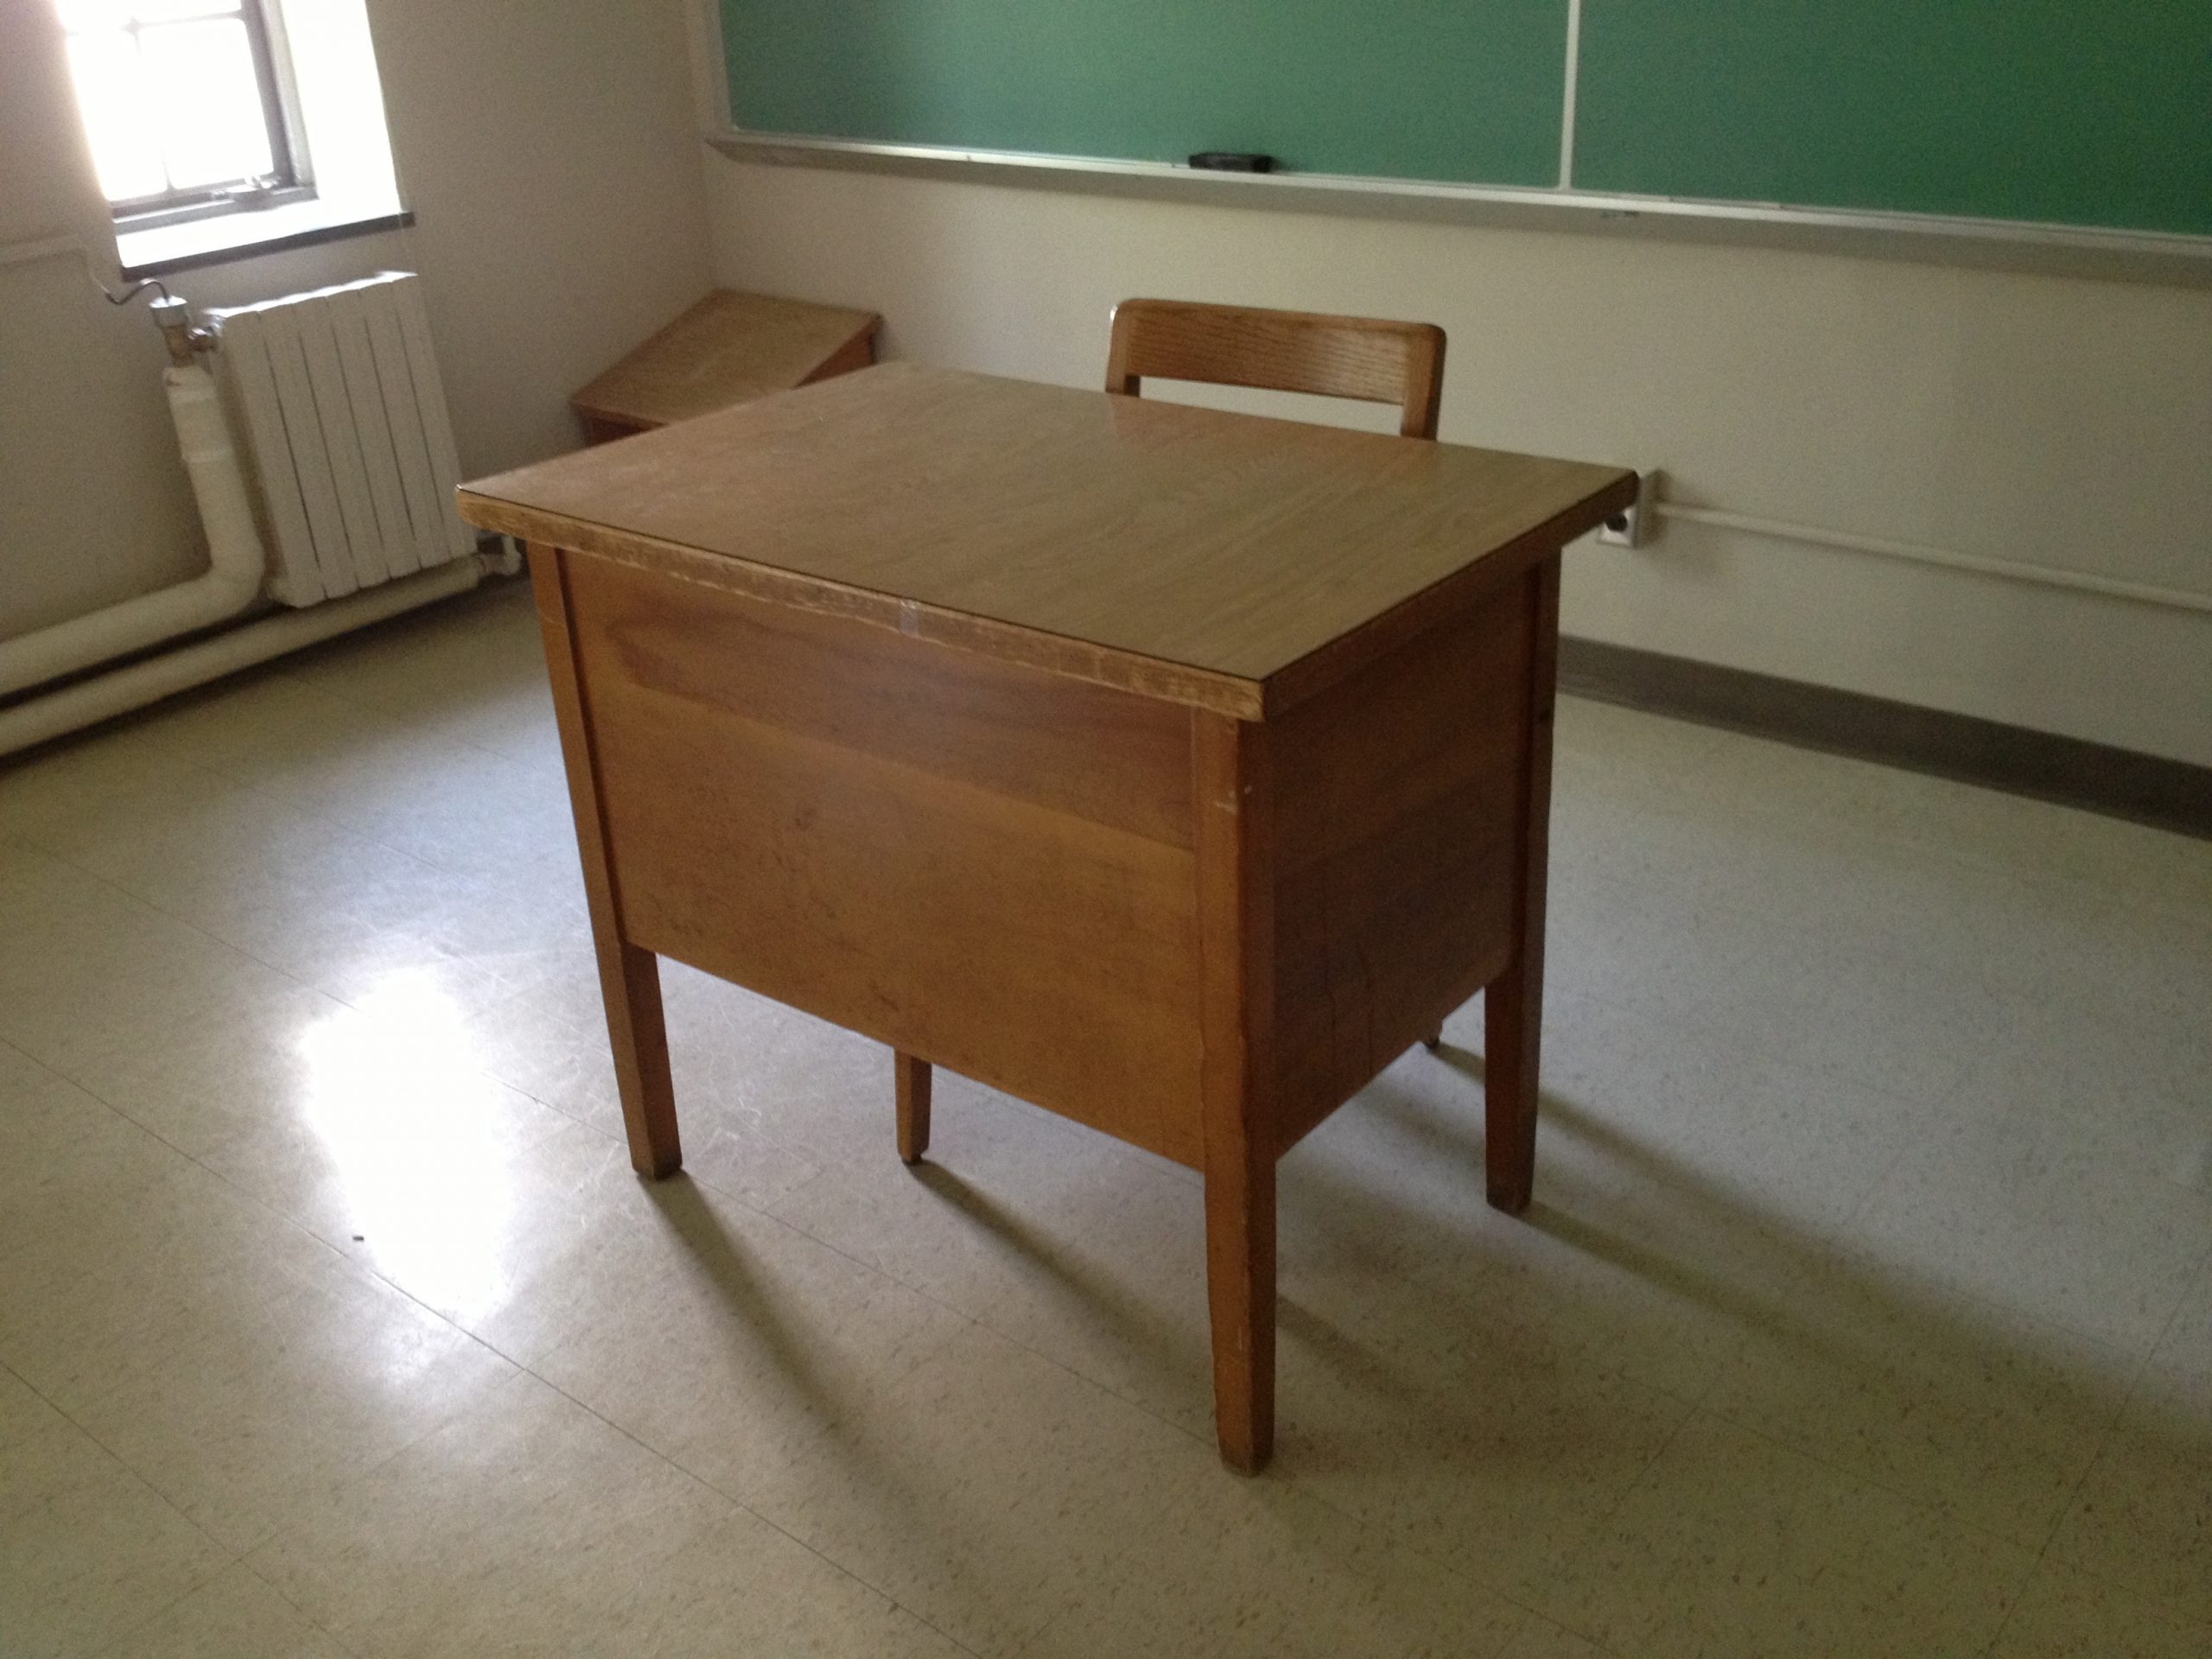 Classrooms lacking even desks.